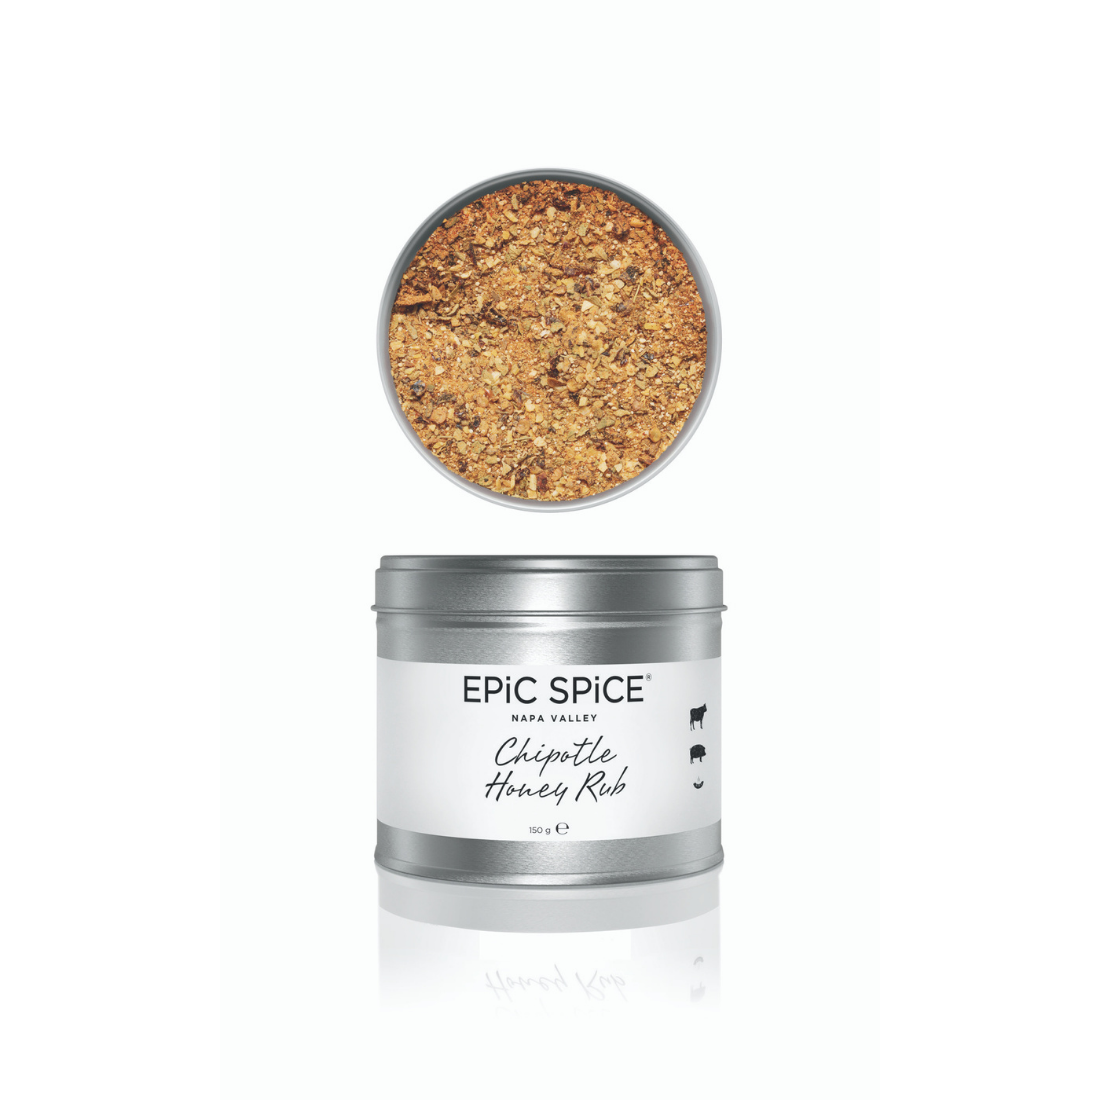 Billede af Epic Spice, Chipotle Honey Rub, krydderi, 150g.